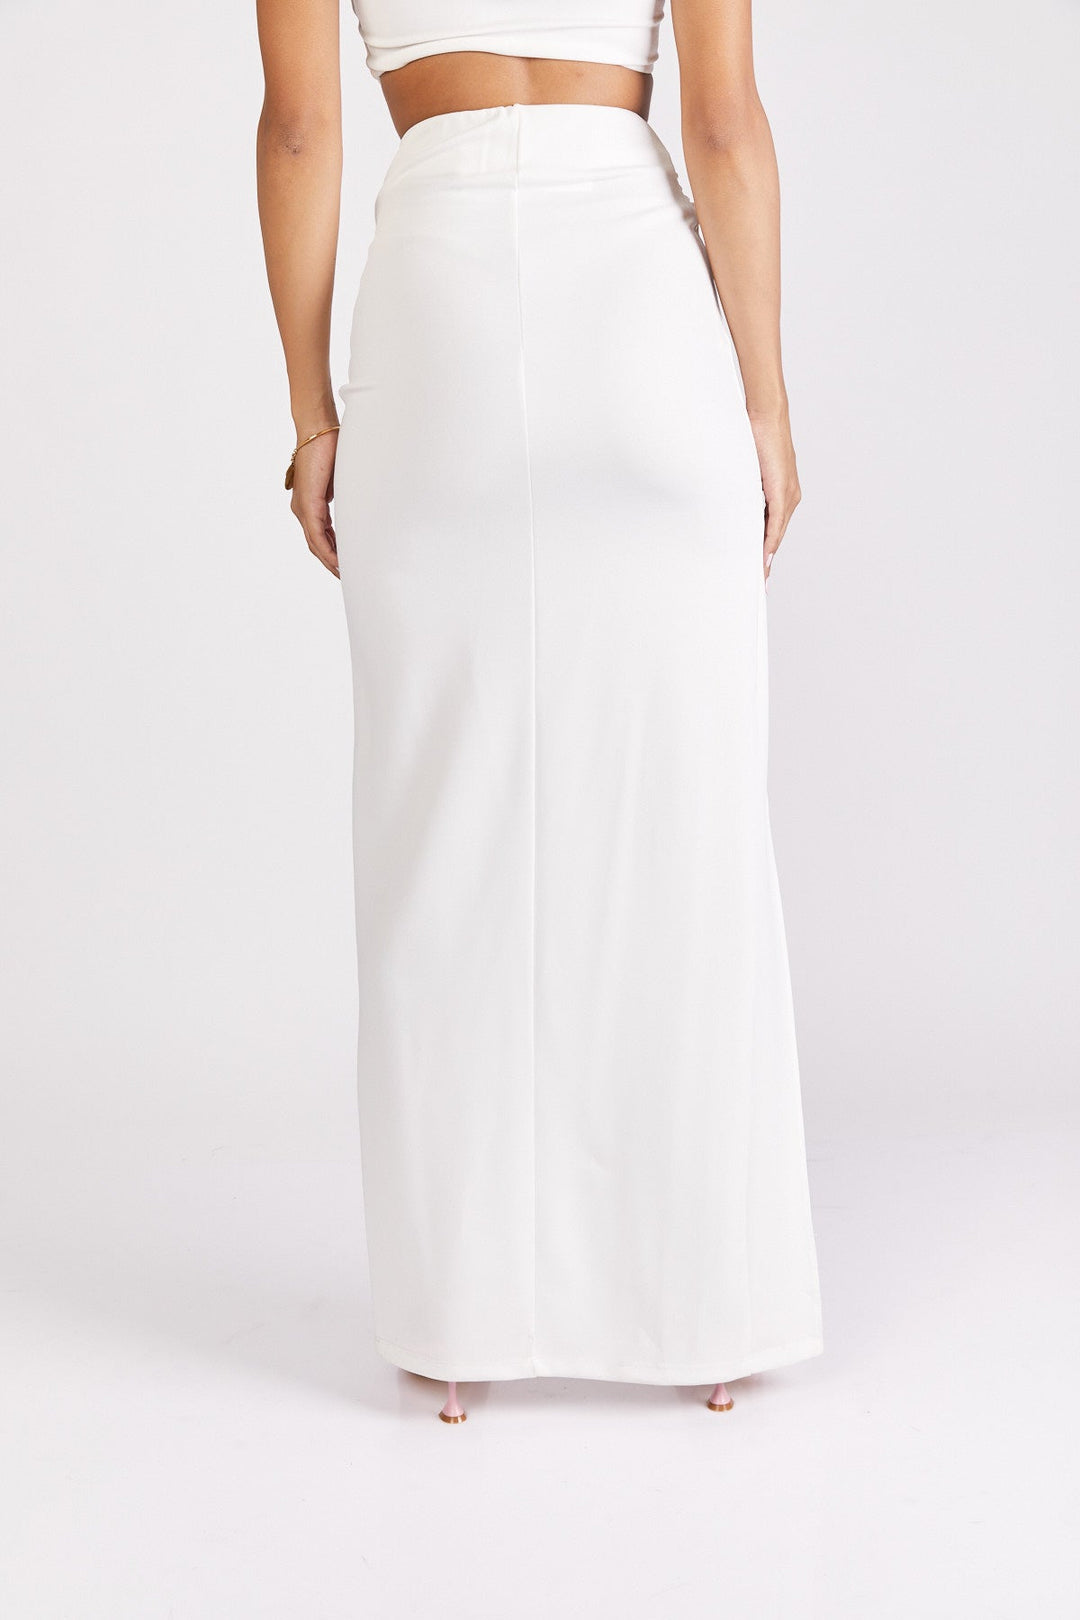 חצאית מקסי אדריאן בצבע לבן - Neta Efrati